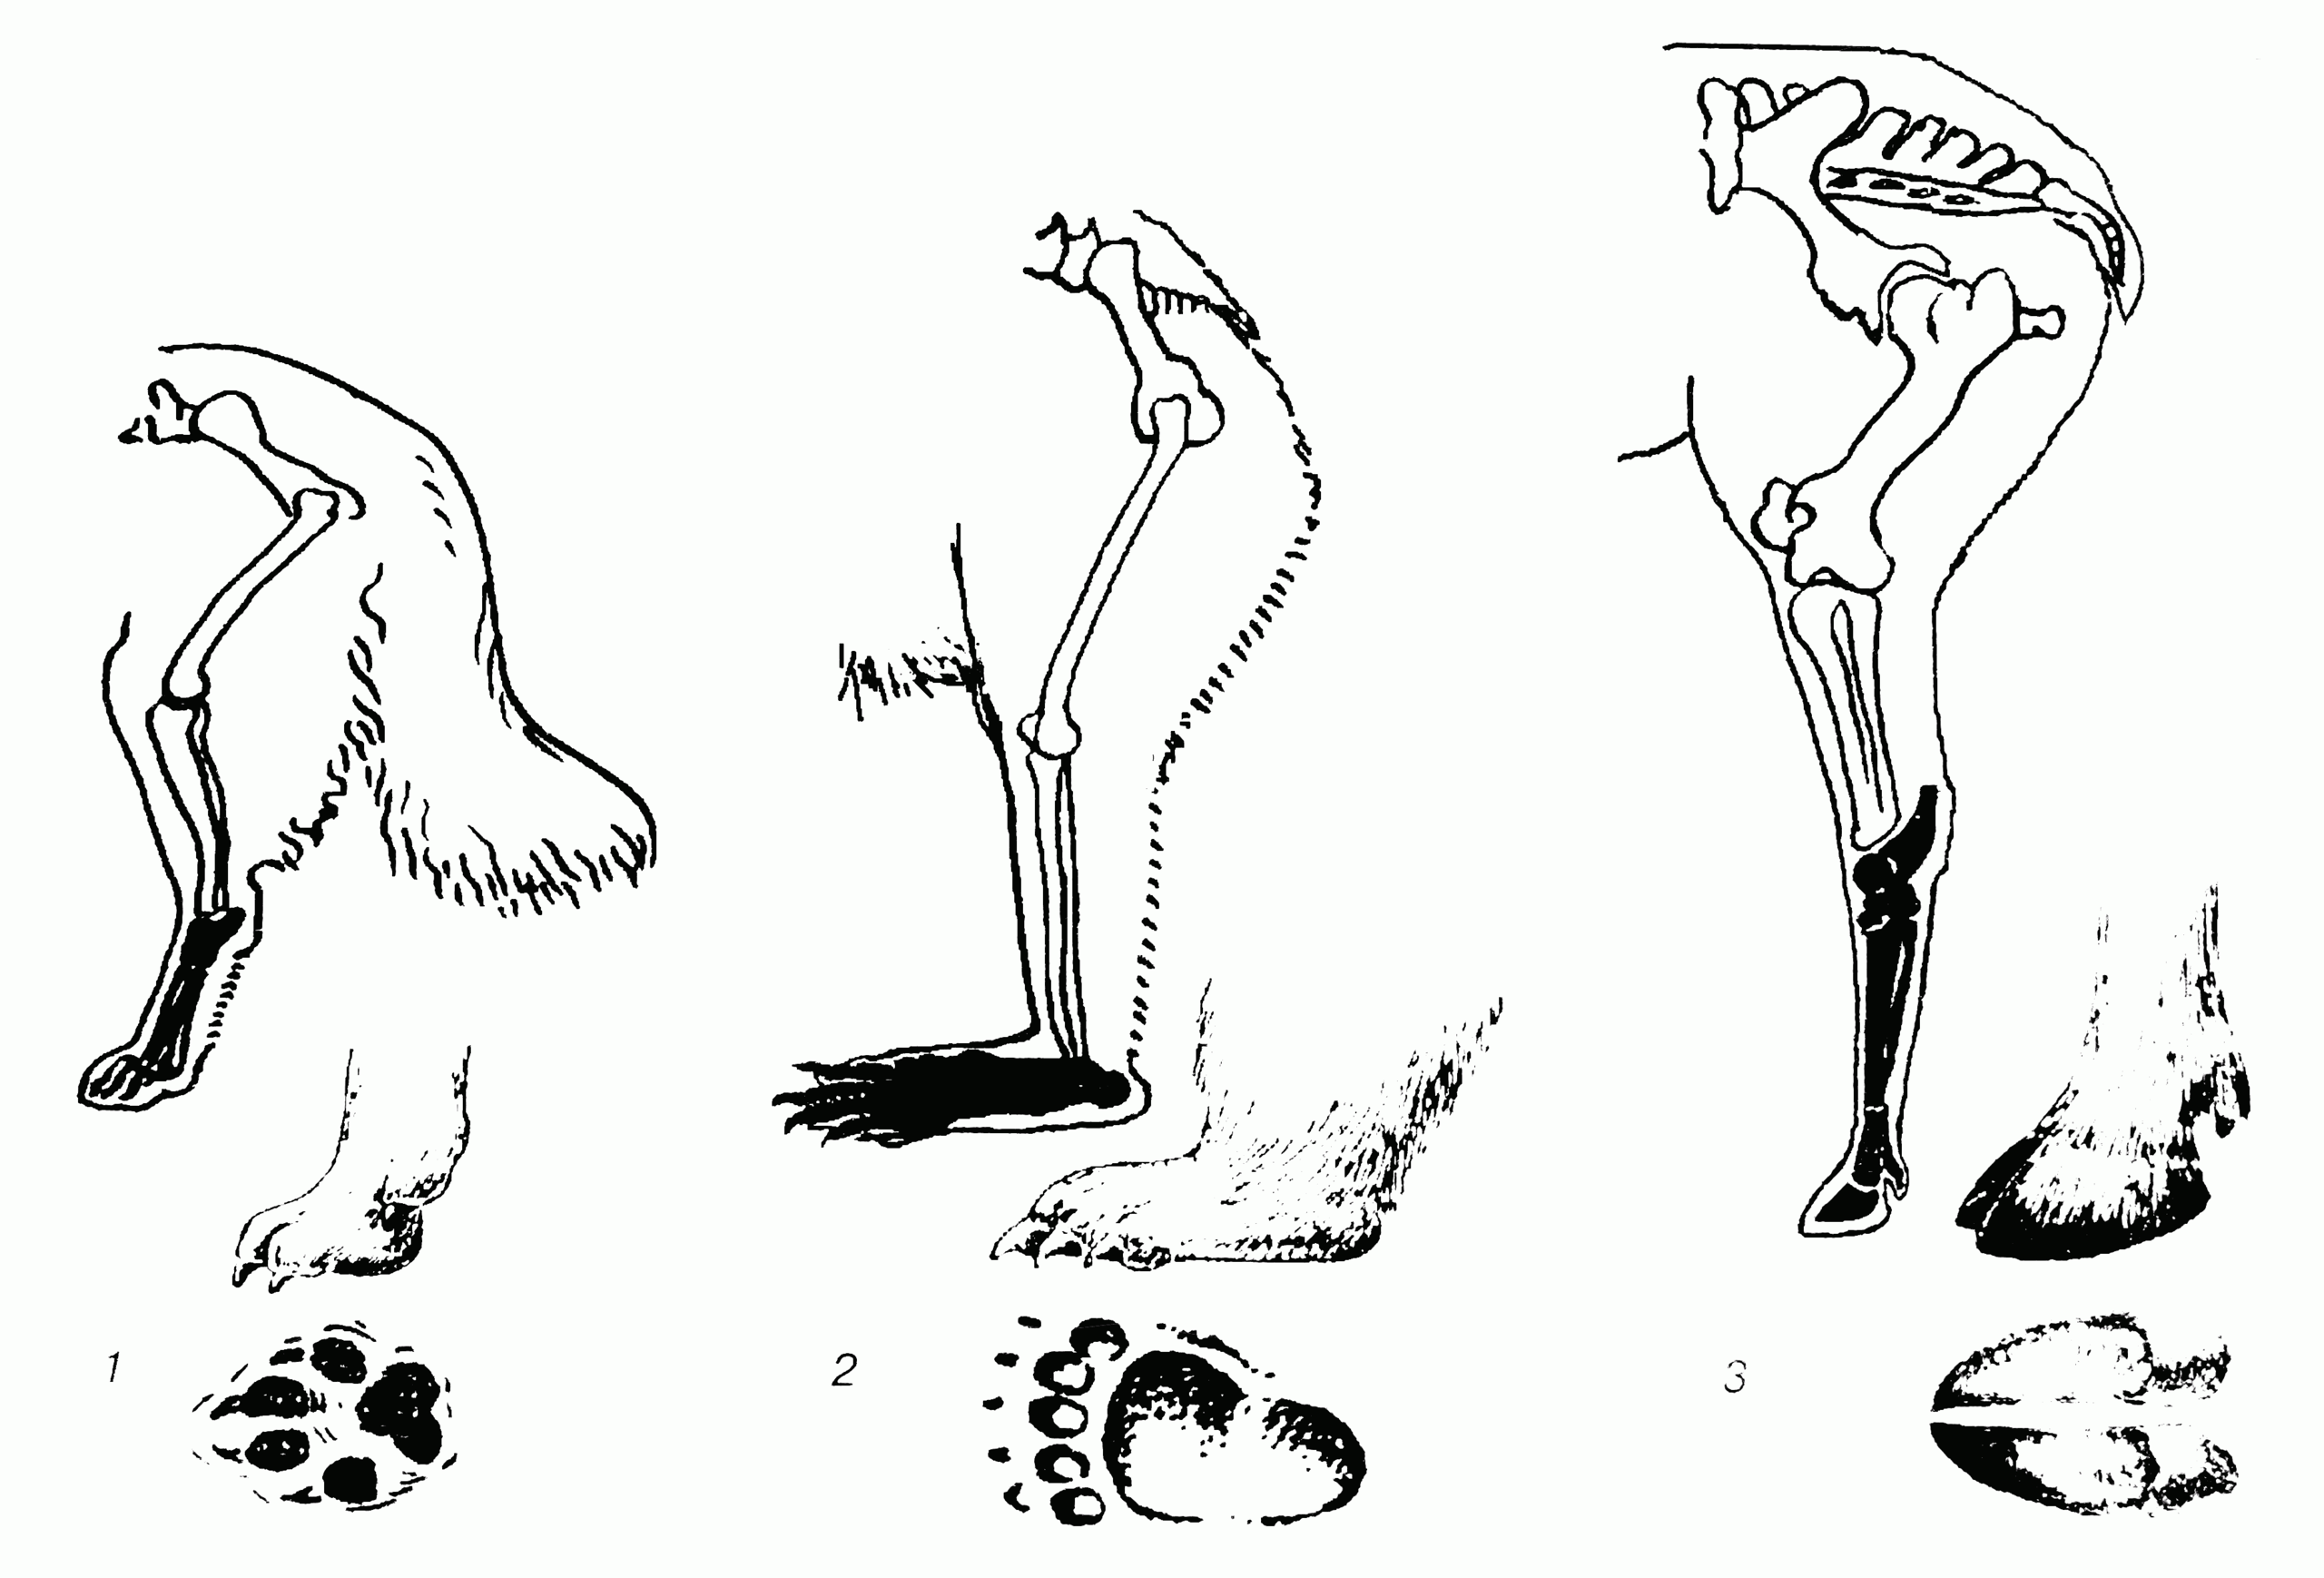 Ляжки задних ног у волка 4. Конечности хищных млекопитающих. Строение задних конечностей млекопитающих. Кости скелета задней конечности млекопитающих. Стопоходящие пальцеходящие фалангоходящие.